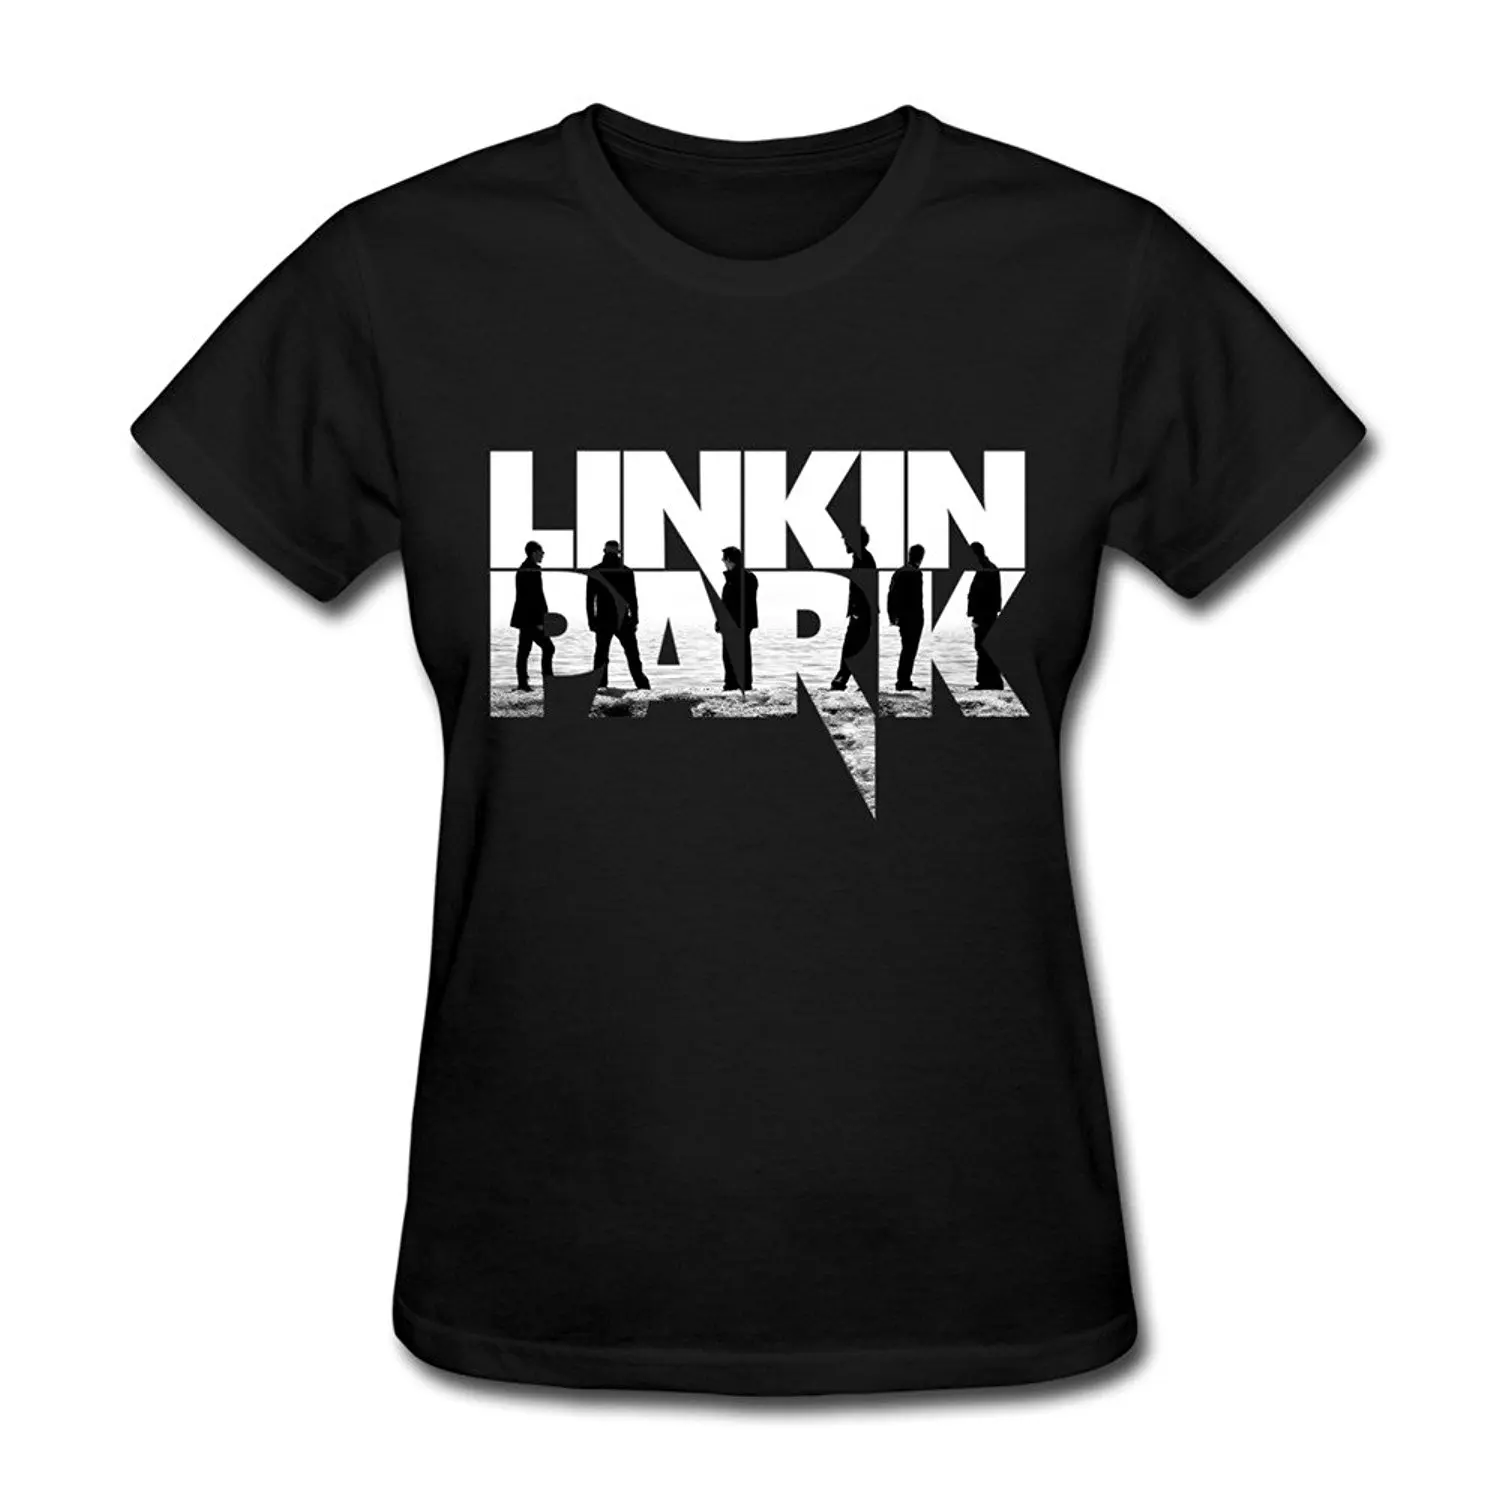 SUAMDAN женская футболка Linkin Park Minutes To Midnight летняя стильная женская футболка с коротким рукавом футболки женские топы - Цвет: Черный